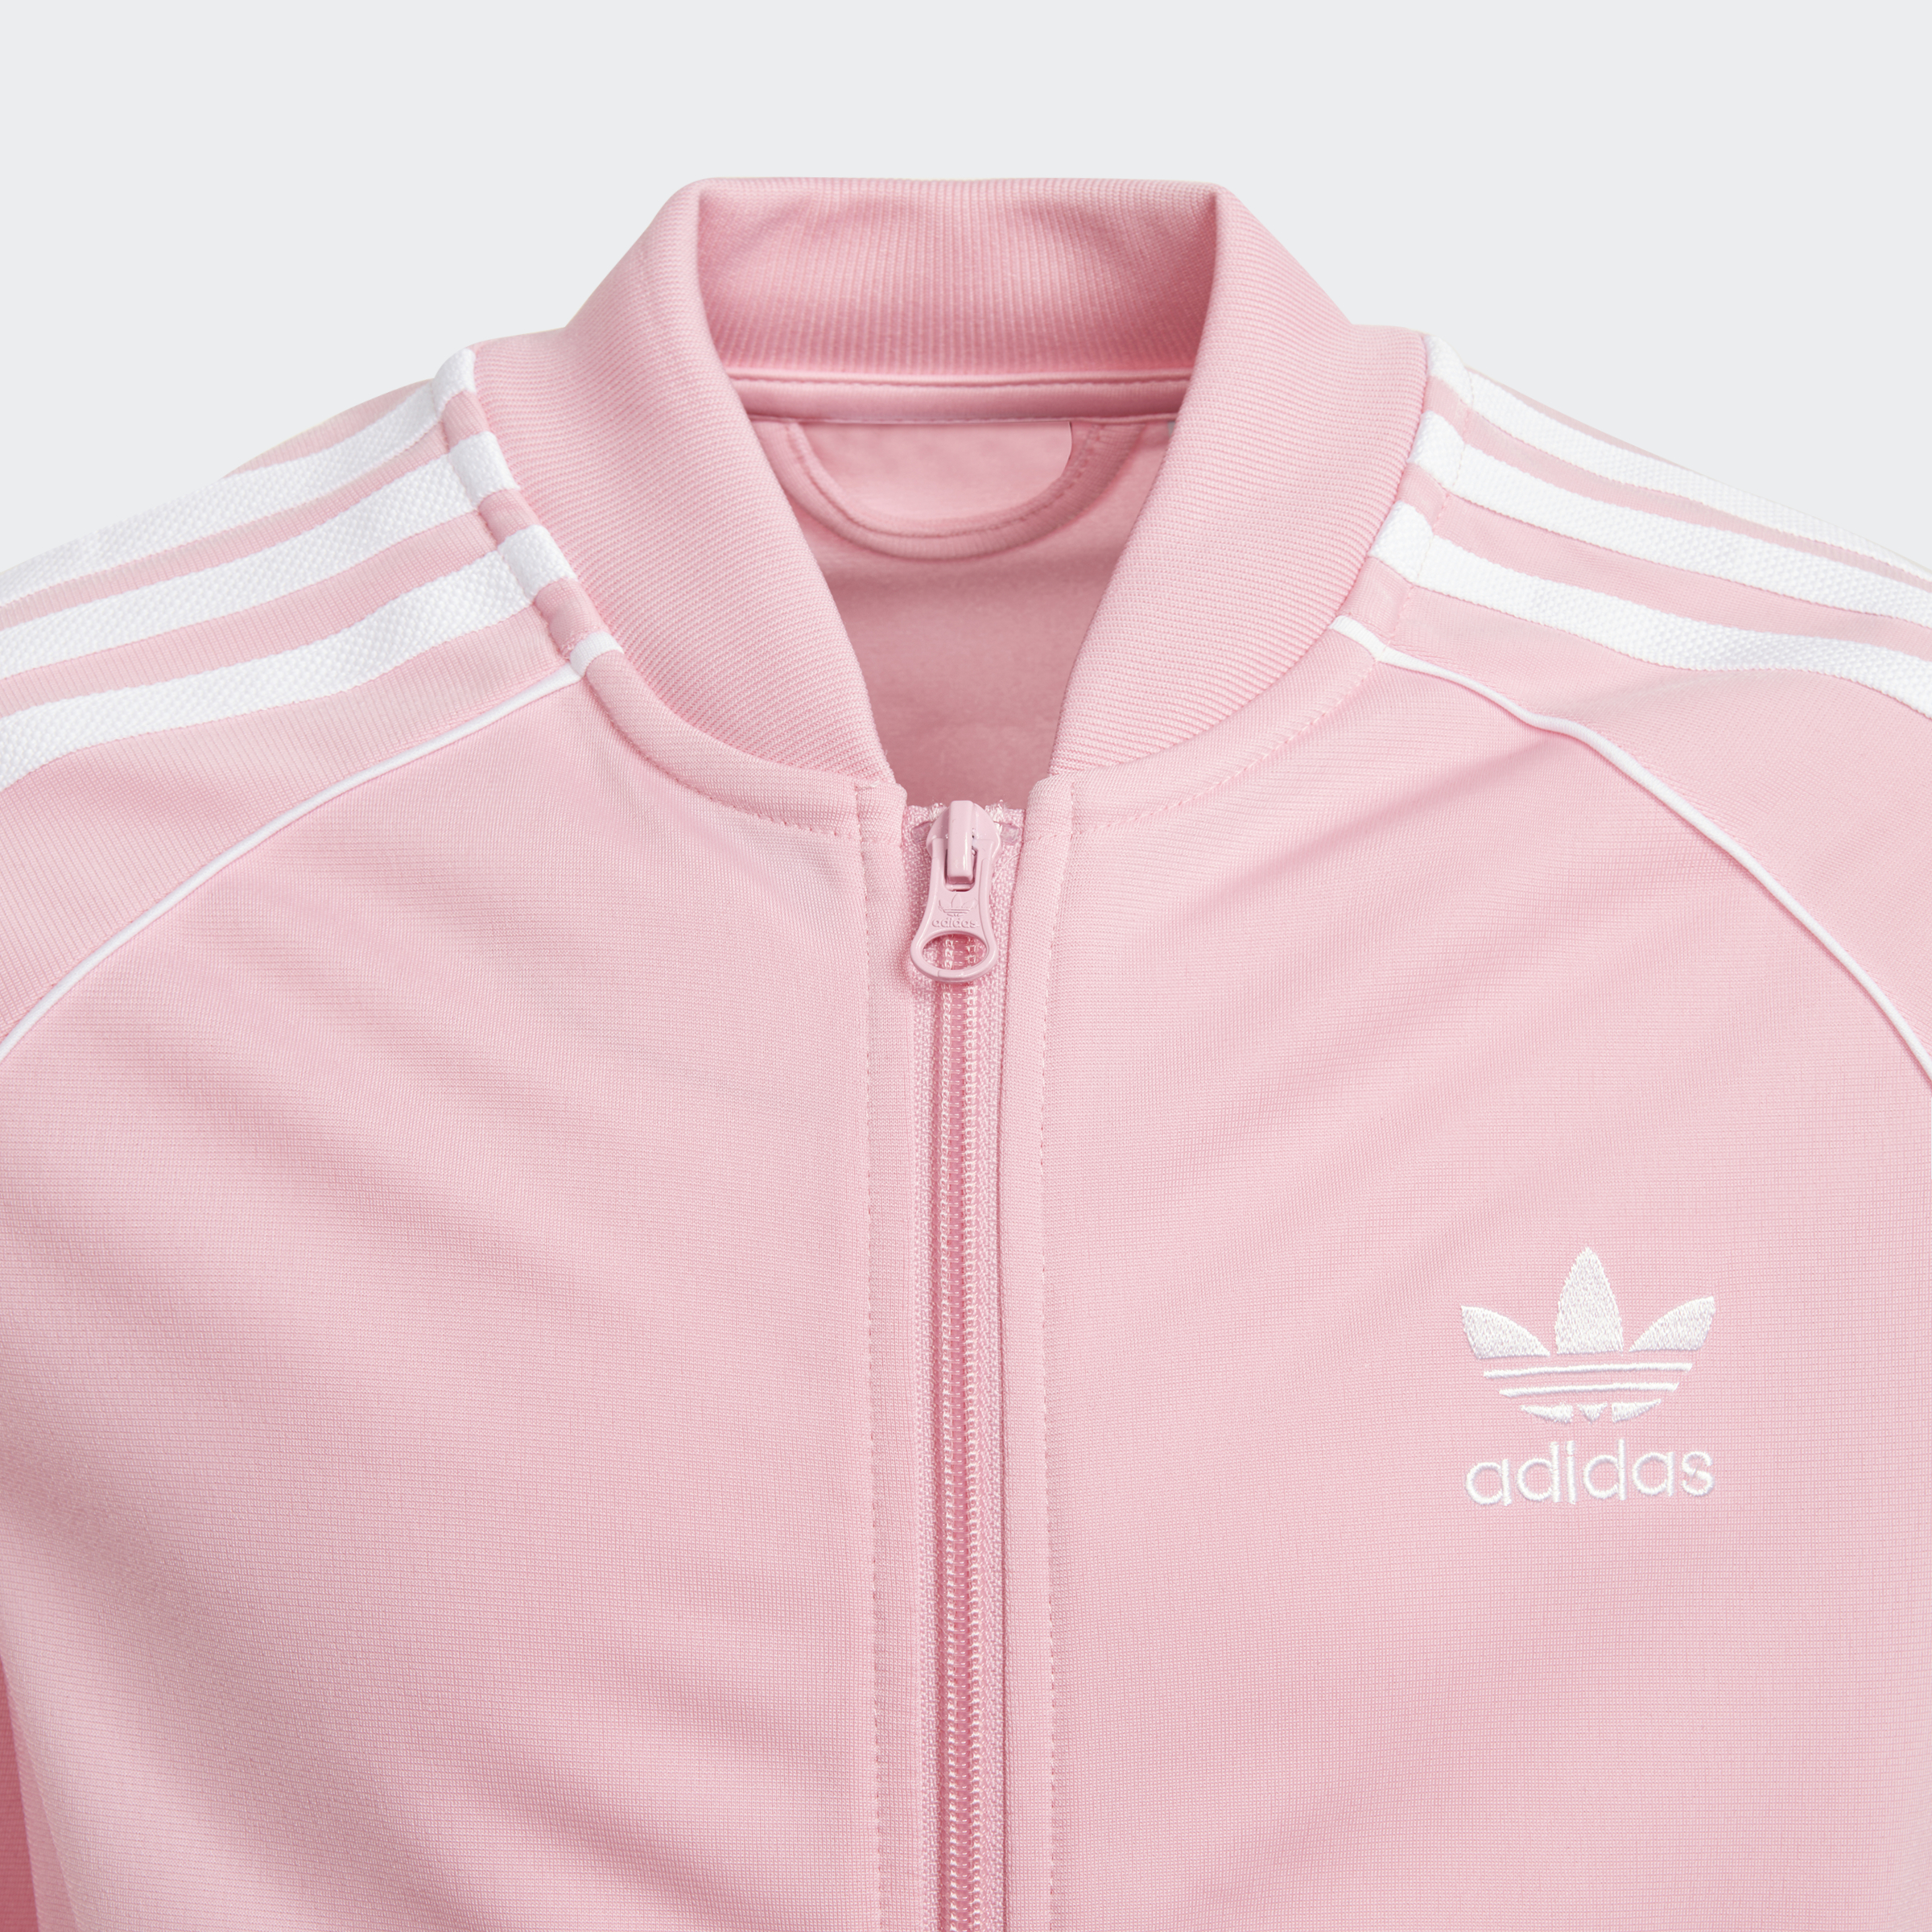 Розово коричневый адидас. Розовая олимпийка адидас мужская. Adidas Originals олимпийка розовая.. Adidas Originals 90s олимпийка розовая. Pink adidas Jacket.